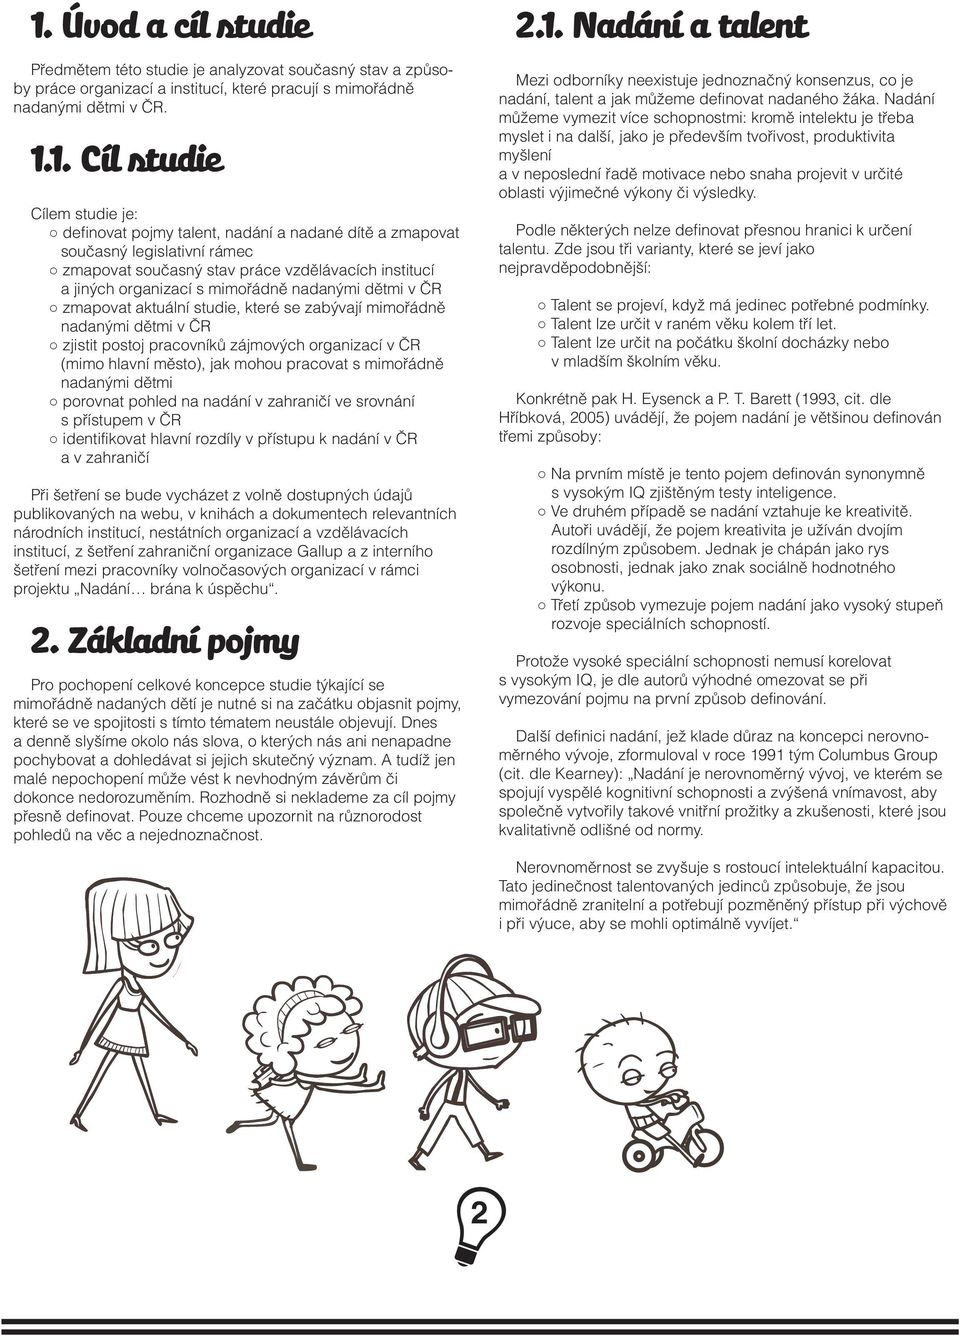 aktuální studie, které se zabývají mimořádně nadanými dětmi v ČR zjistit postoj pracovníků zájmových organizací v ČR (mimo hlavní město), jak mohou pracovat s mimořádně nadanými dětmi porovnat pohled